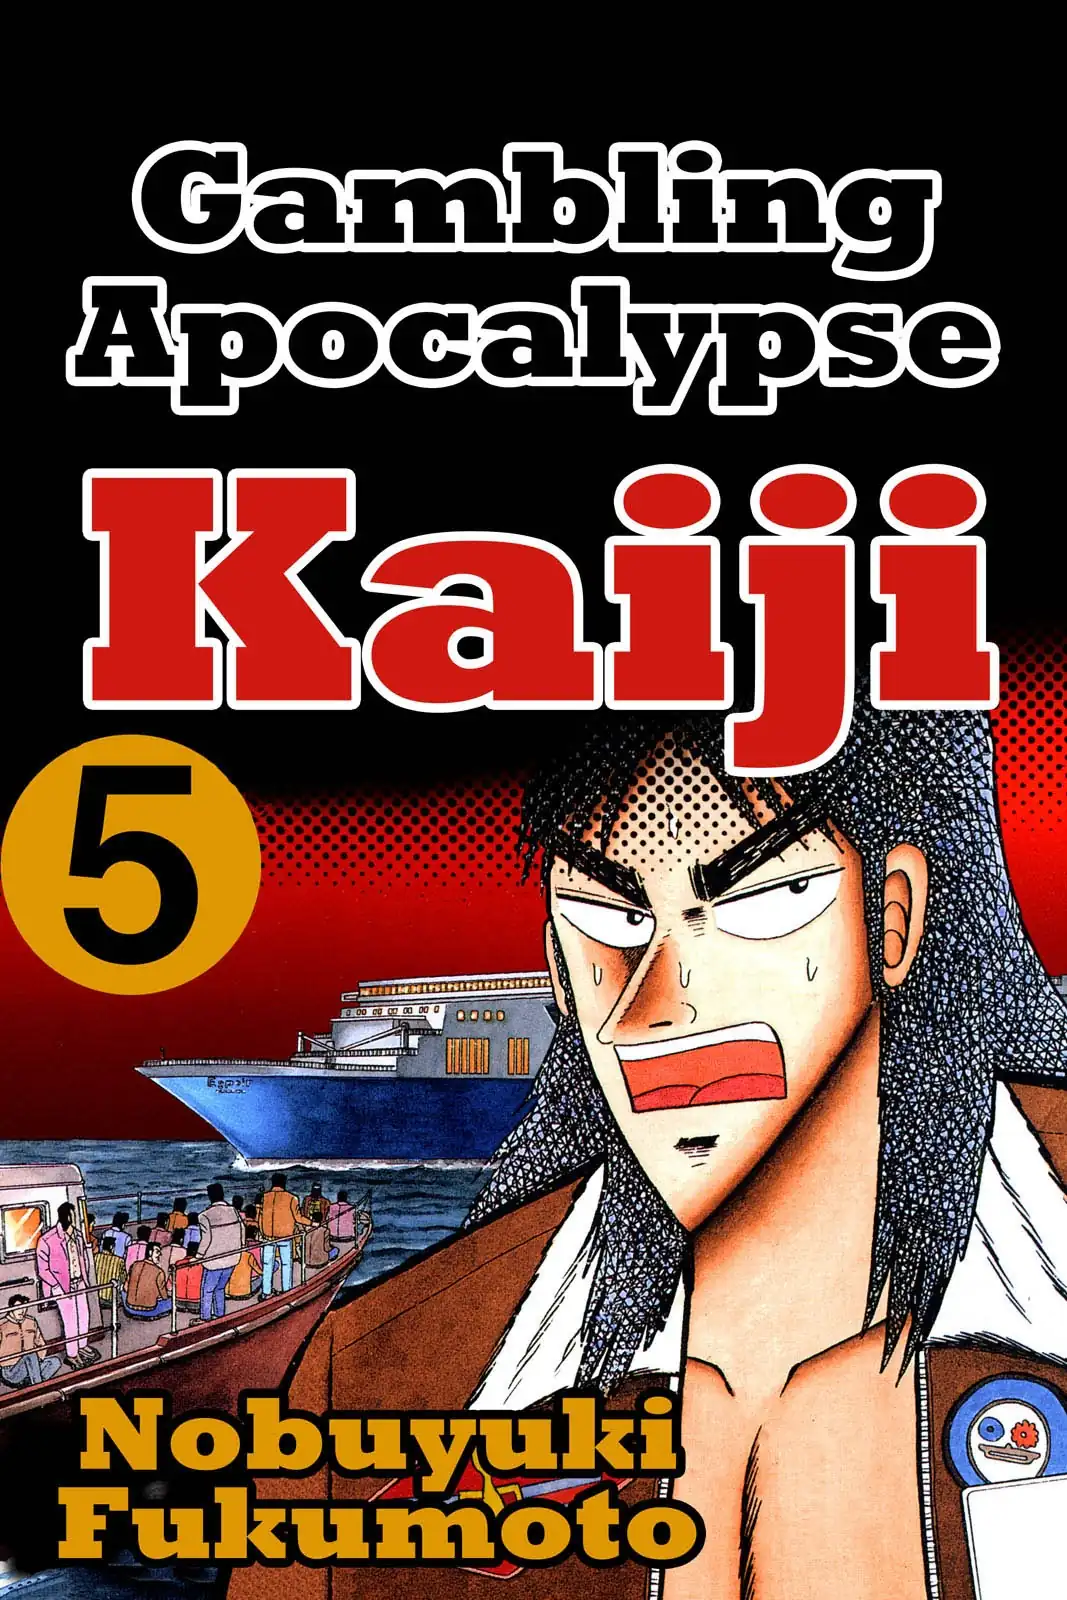 Tobaku Datenroku Kaiji, Chapter 49 - Kaiji Manga Online